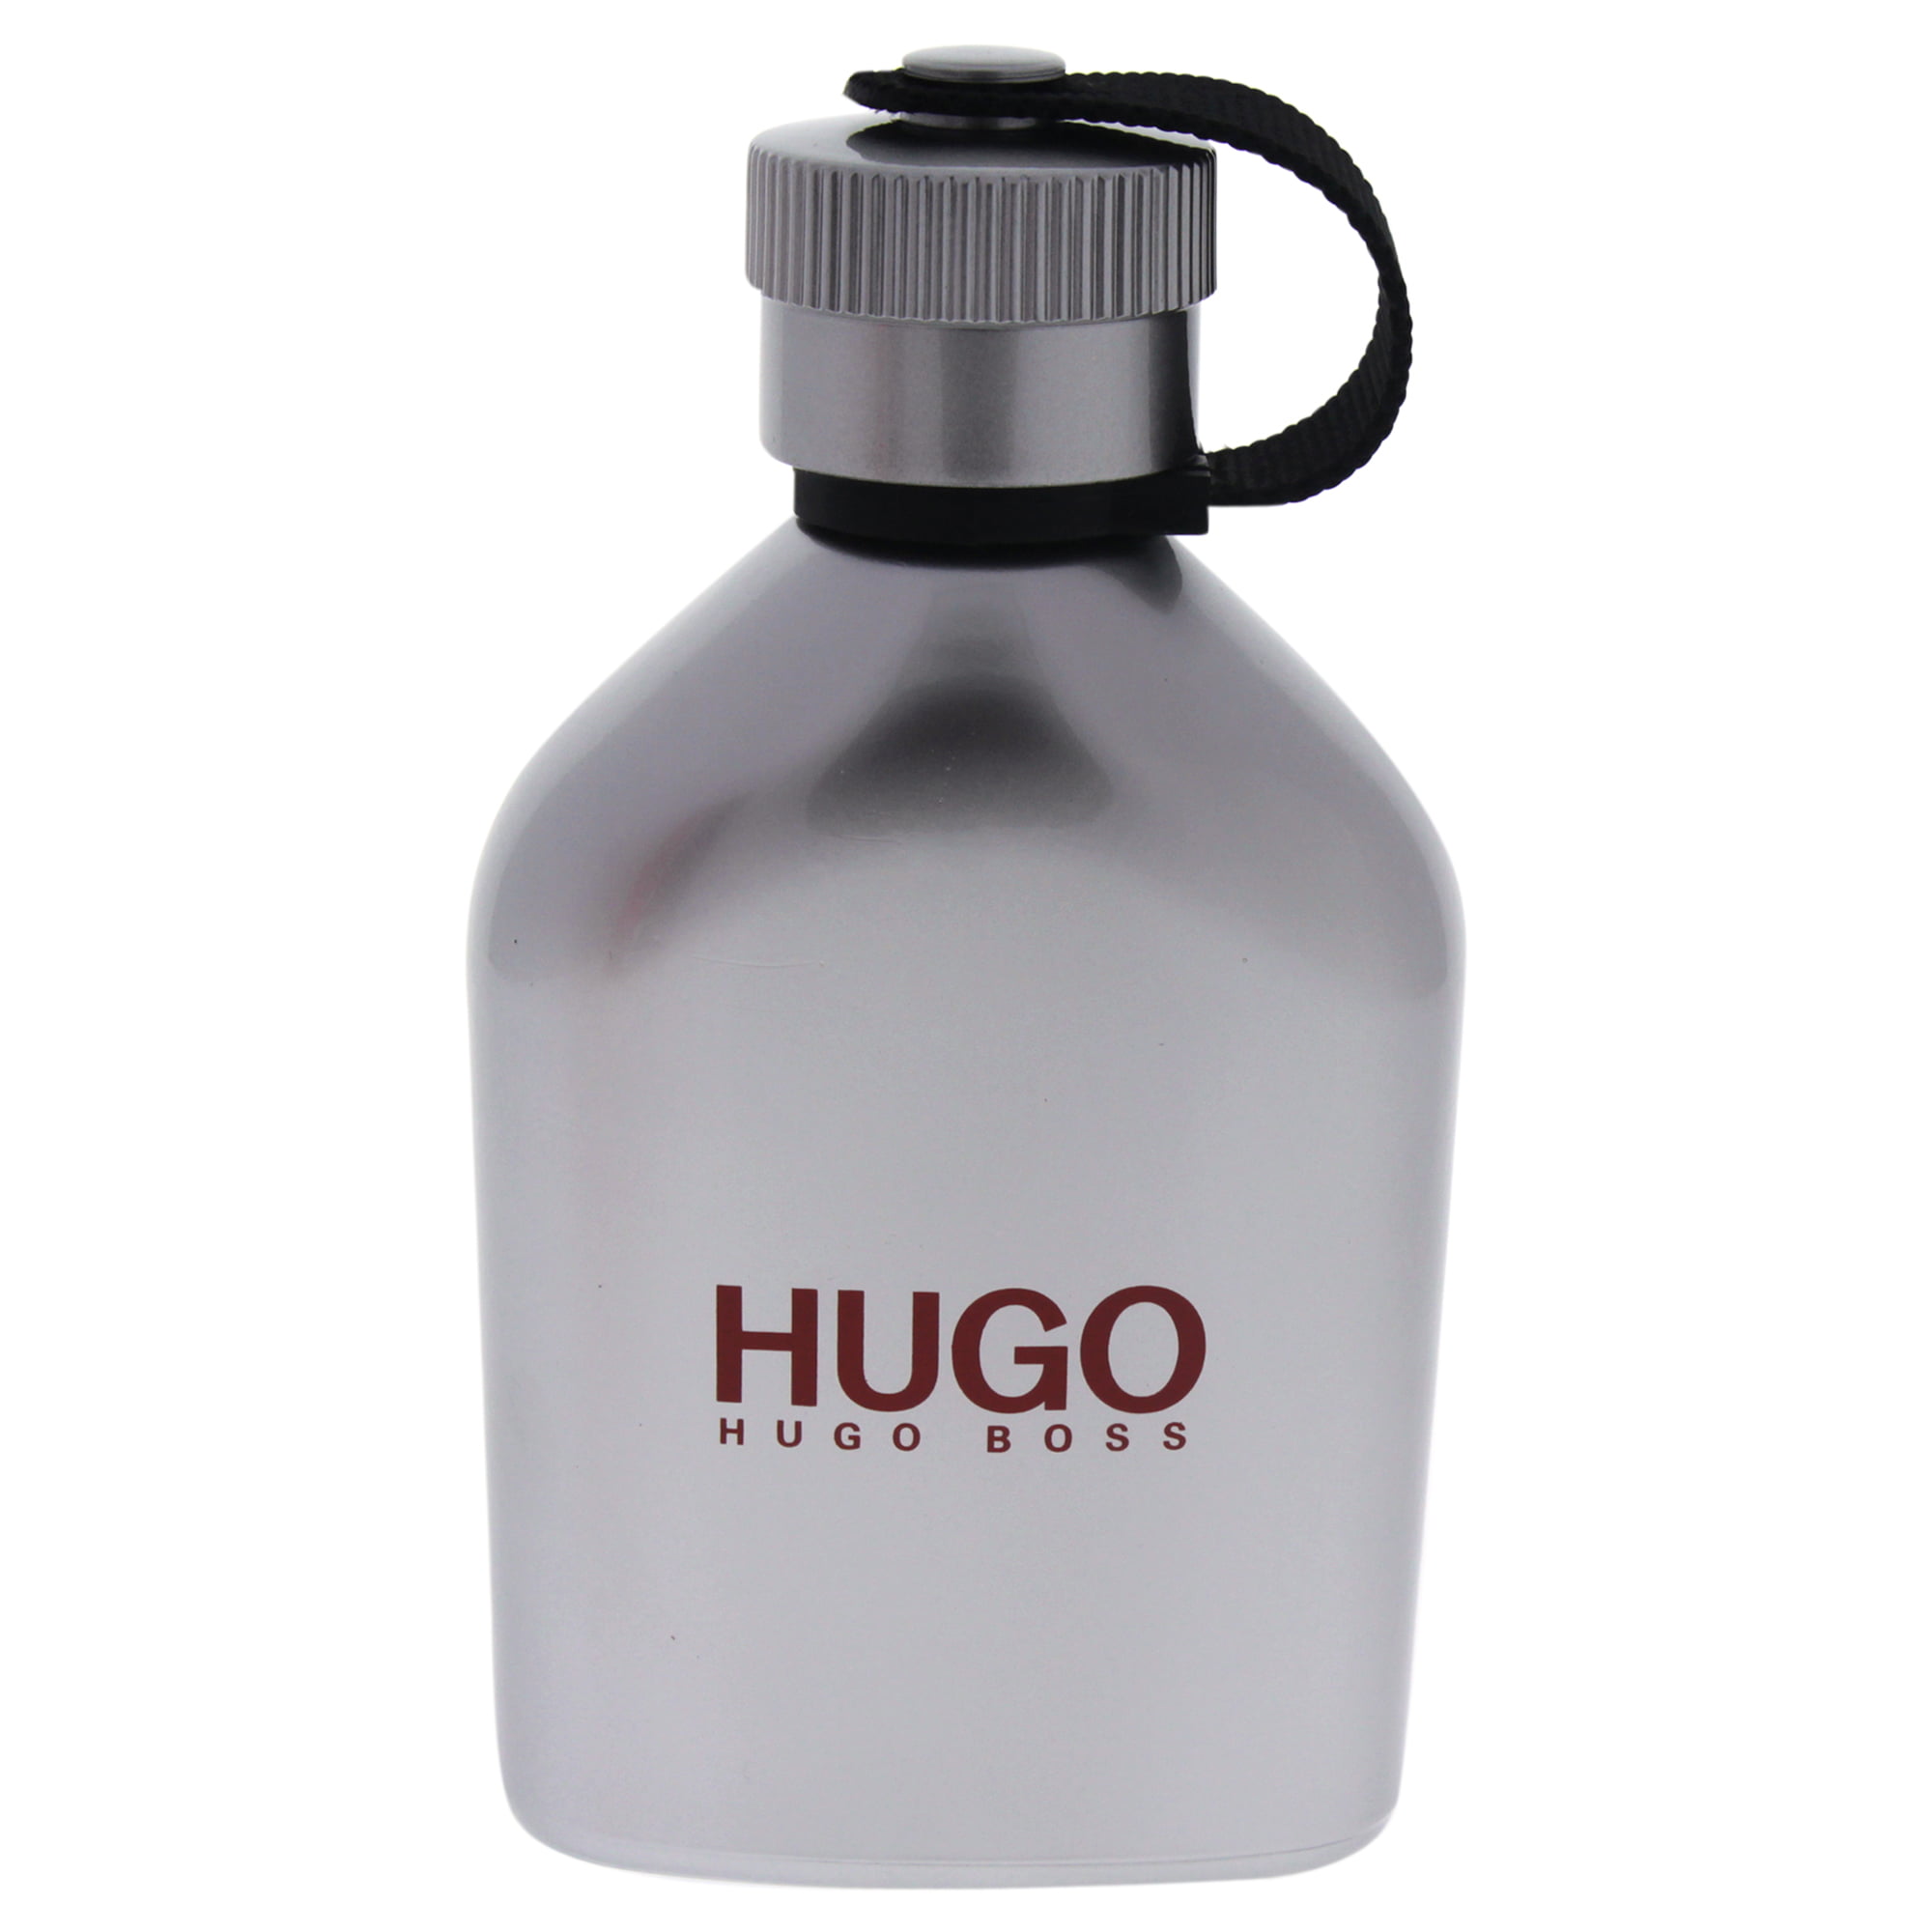 hugo ice